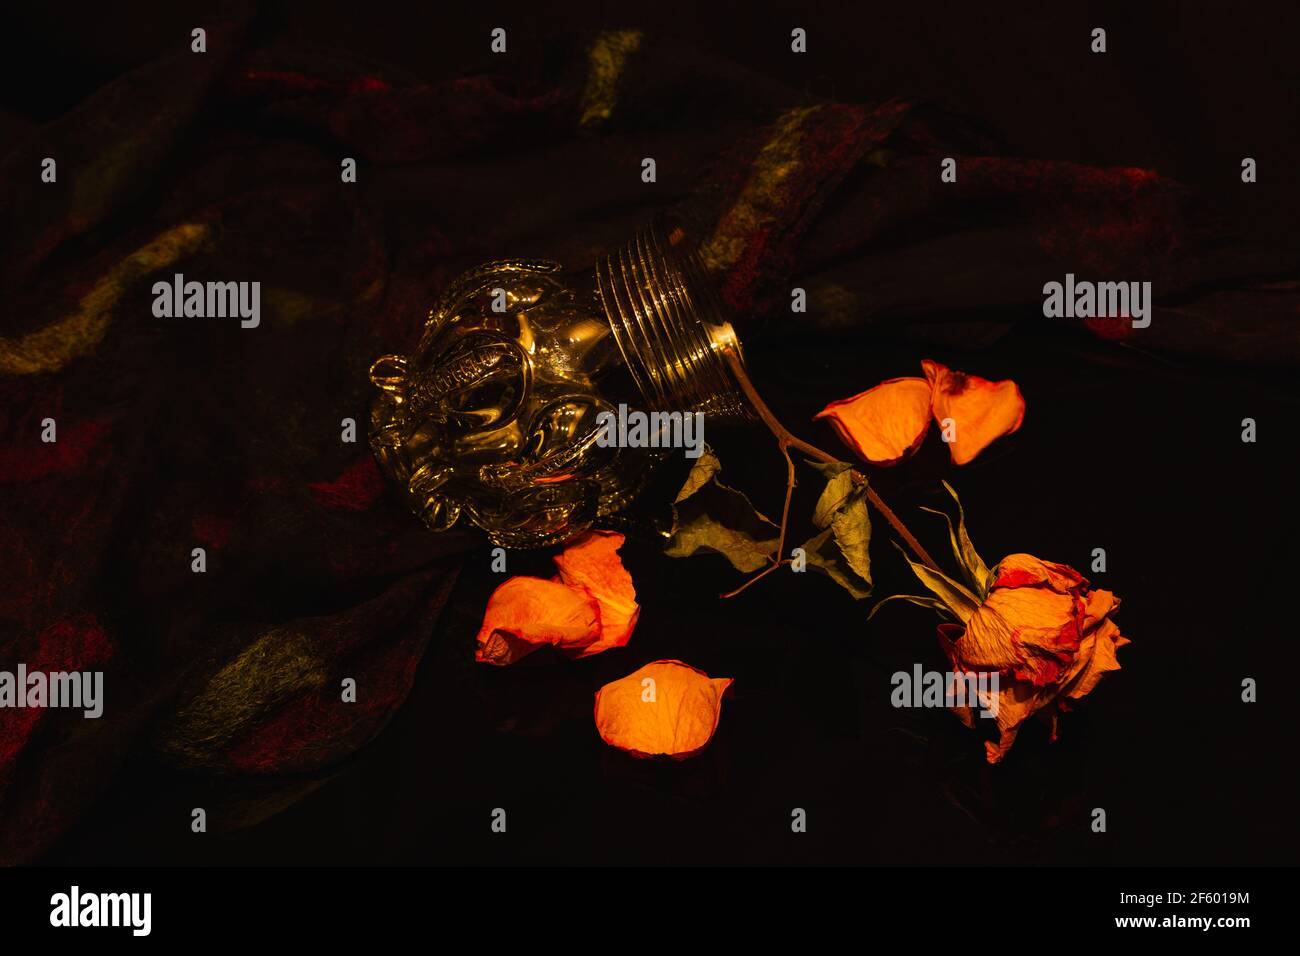 rose,dry rose, close up view, still life, wilted flower, detail shot, Nahaufnahme, Detailaufnahme, historische Vase, Vergänglichkeit, transience, Stock Photo